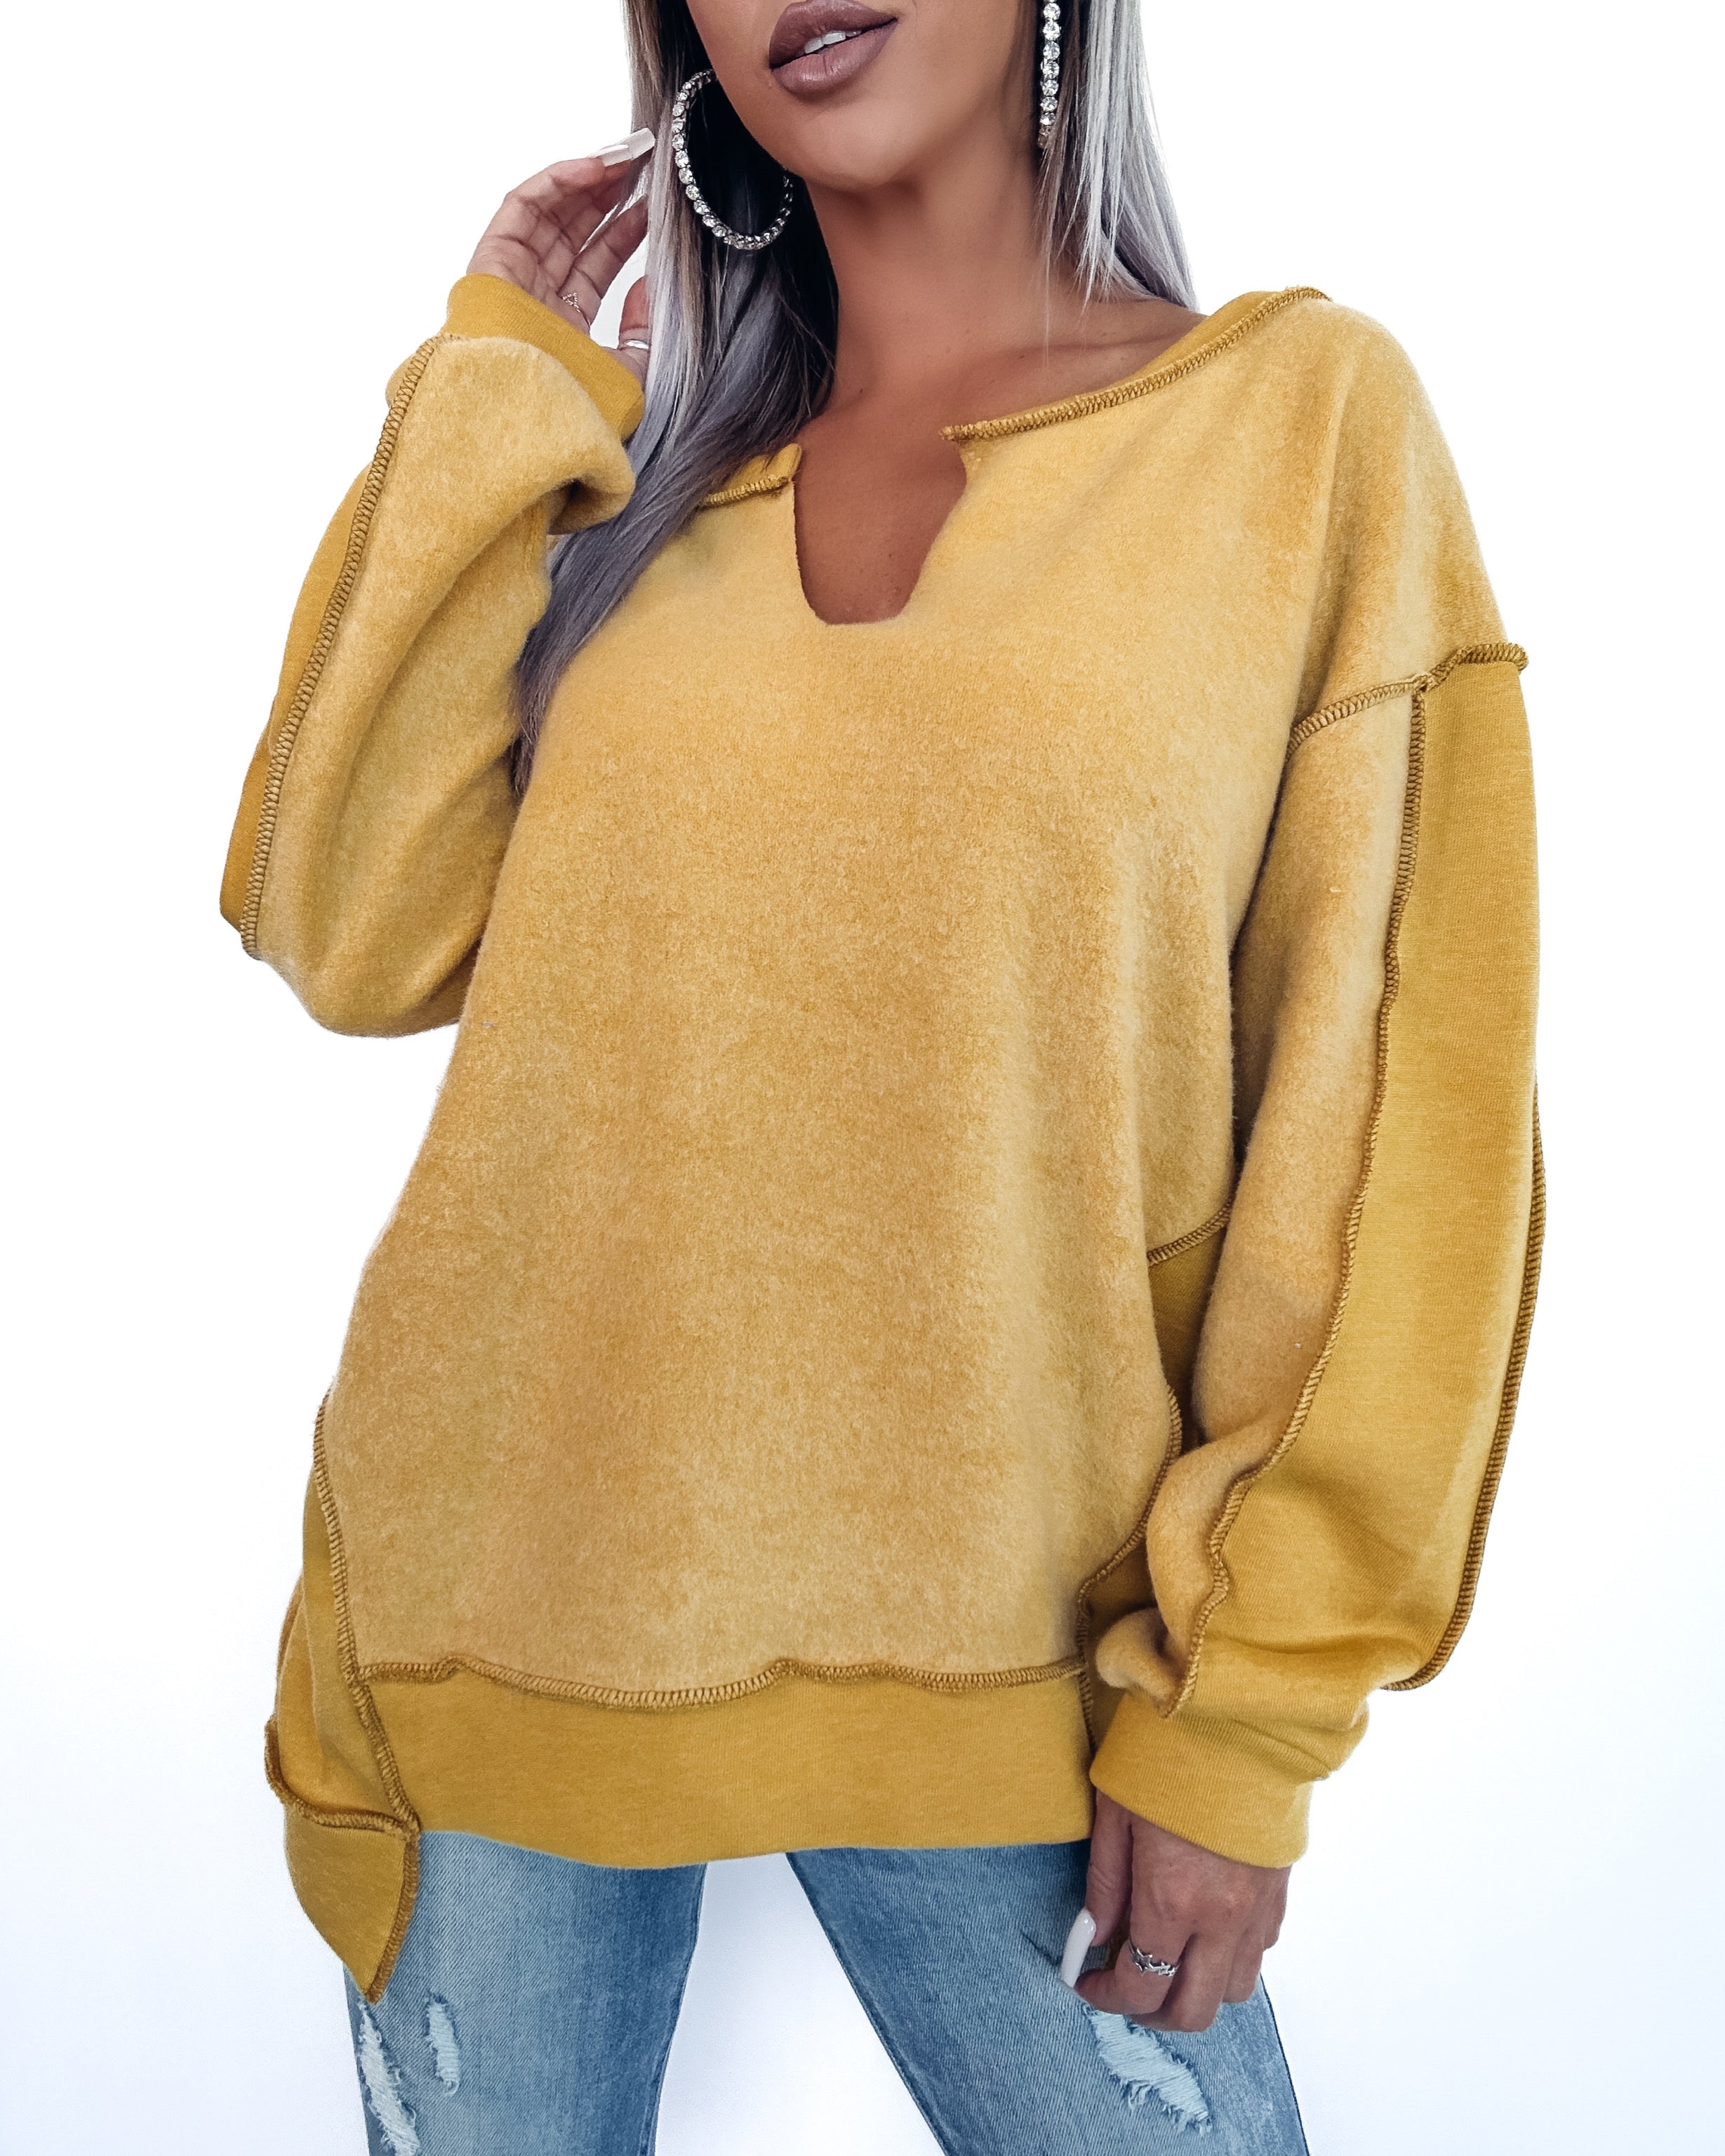 Fuzzy Feeling Fleece Sweater- Mustard